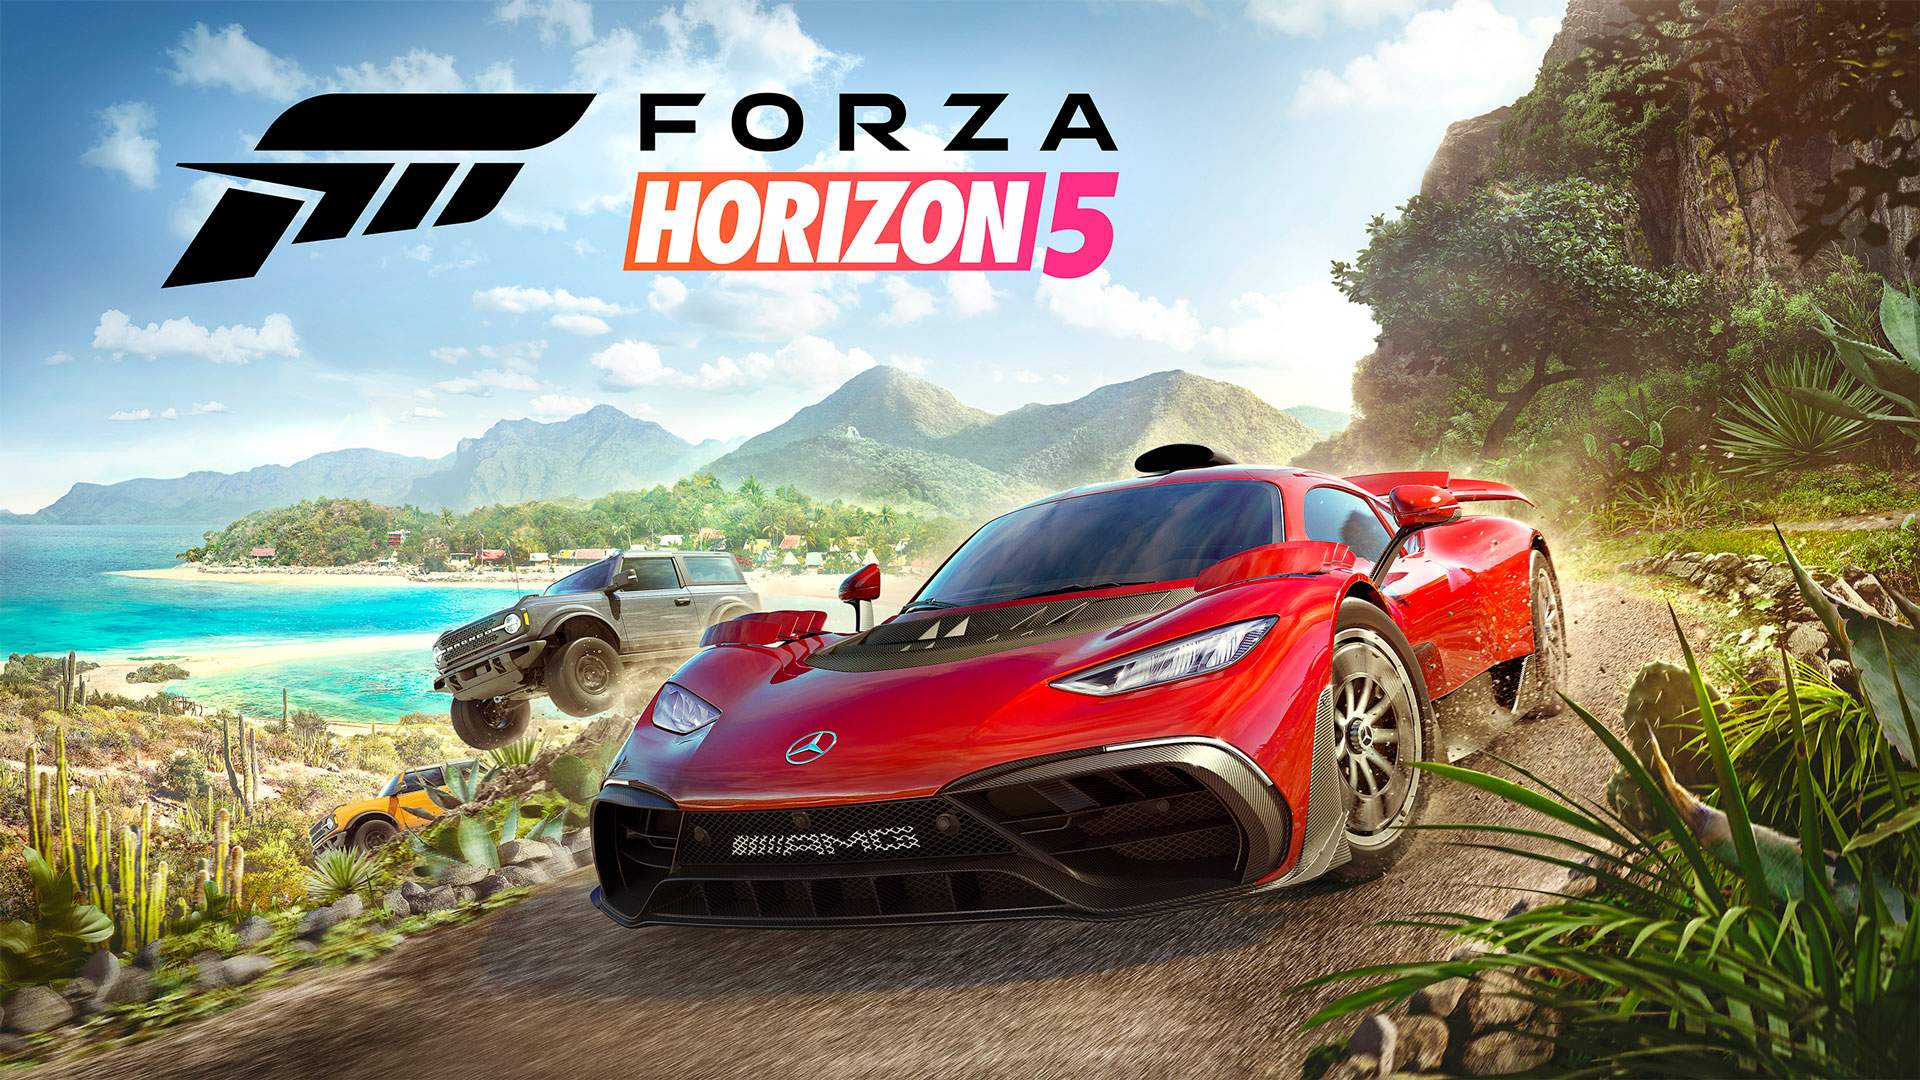 Una chica hackeó Forza Horizon 5 antes de su lanzamiento: el juego ya está en torrents